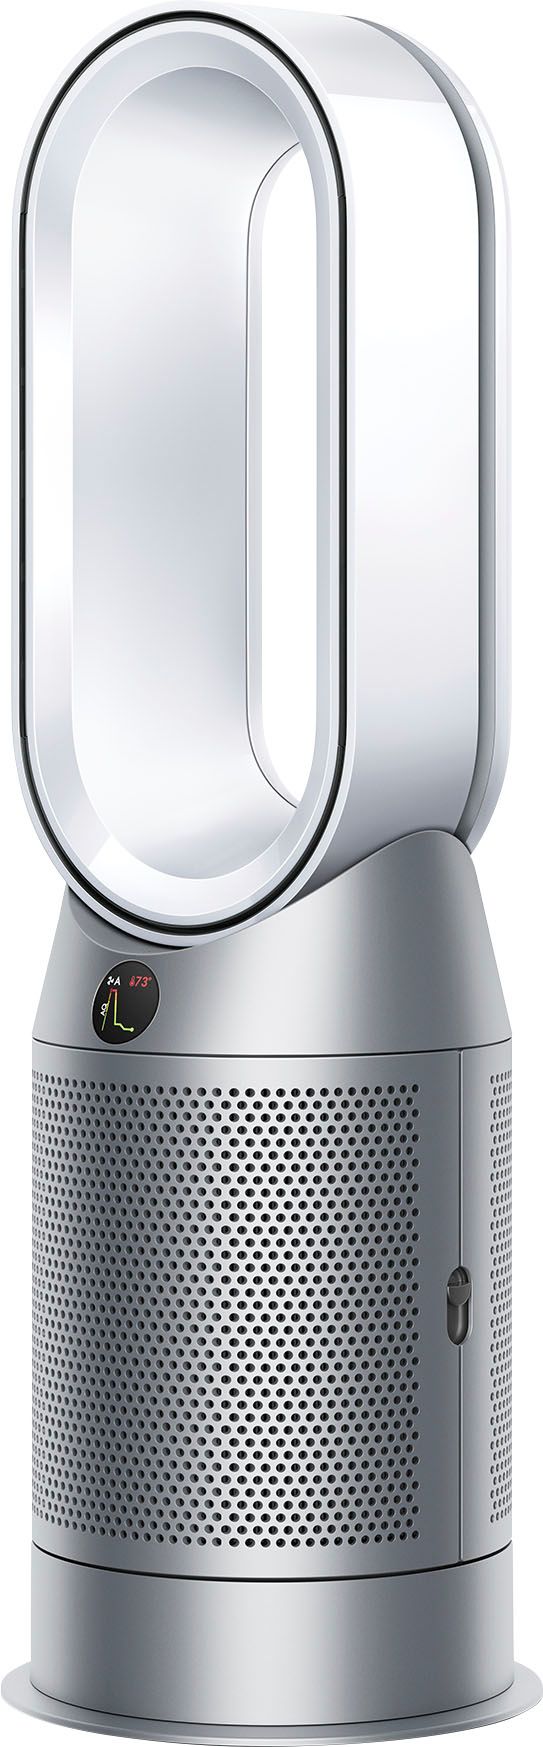 Dyson Hot+Cool Gen1 HP10 Purifier White/Silver 573790-01 - Best Buy